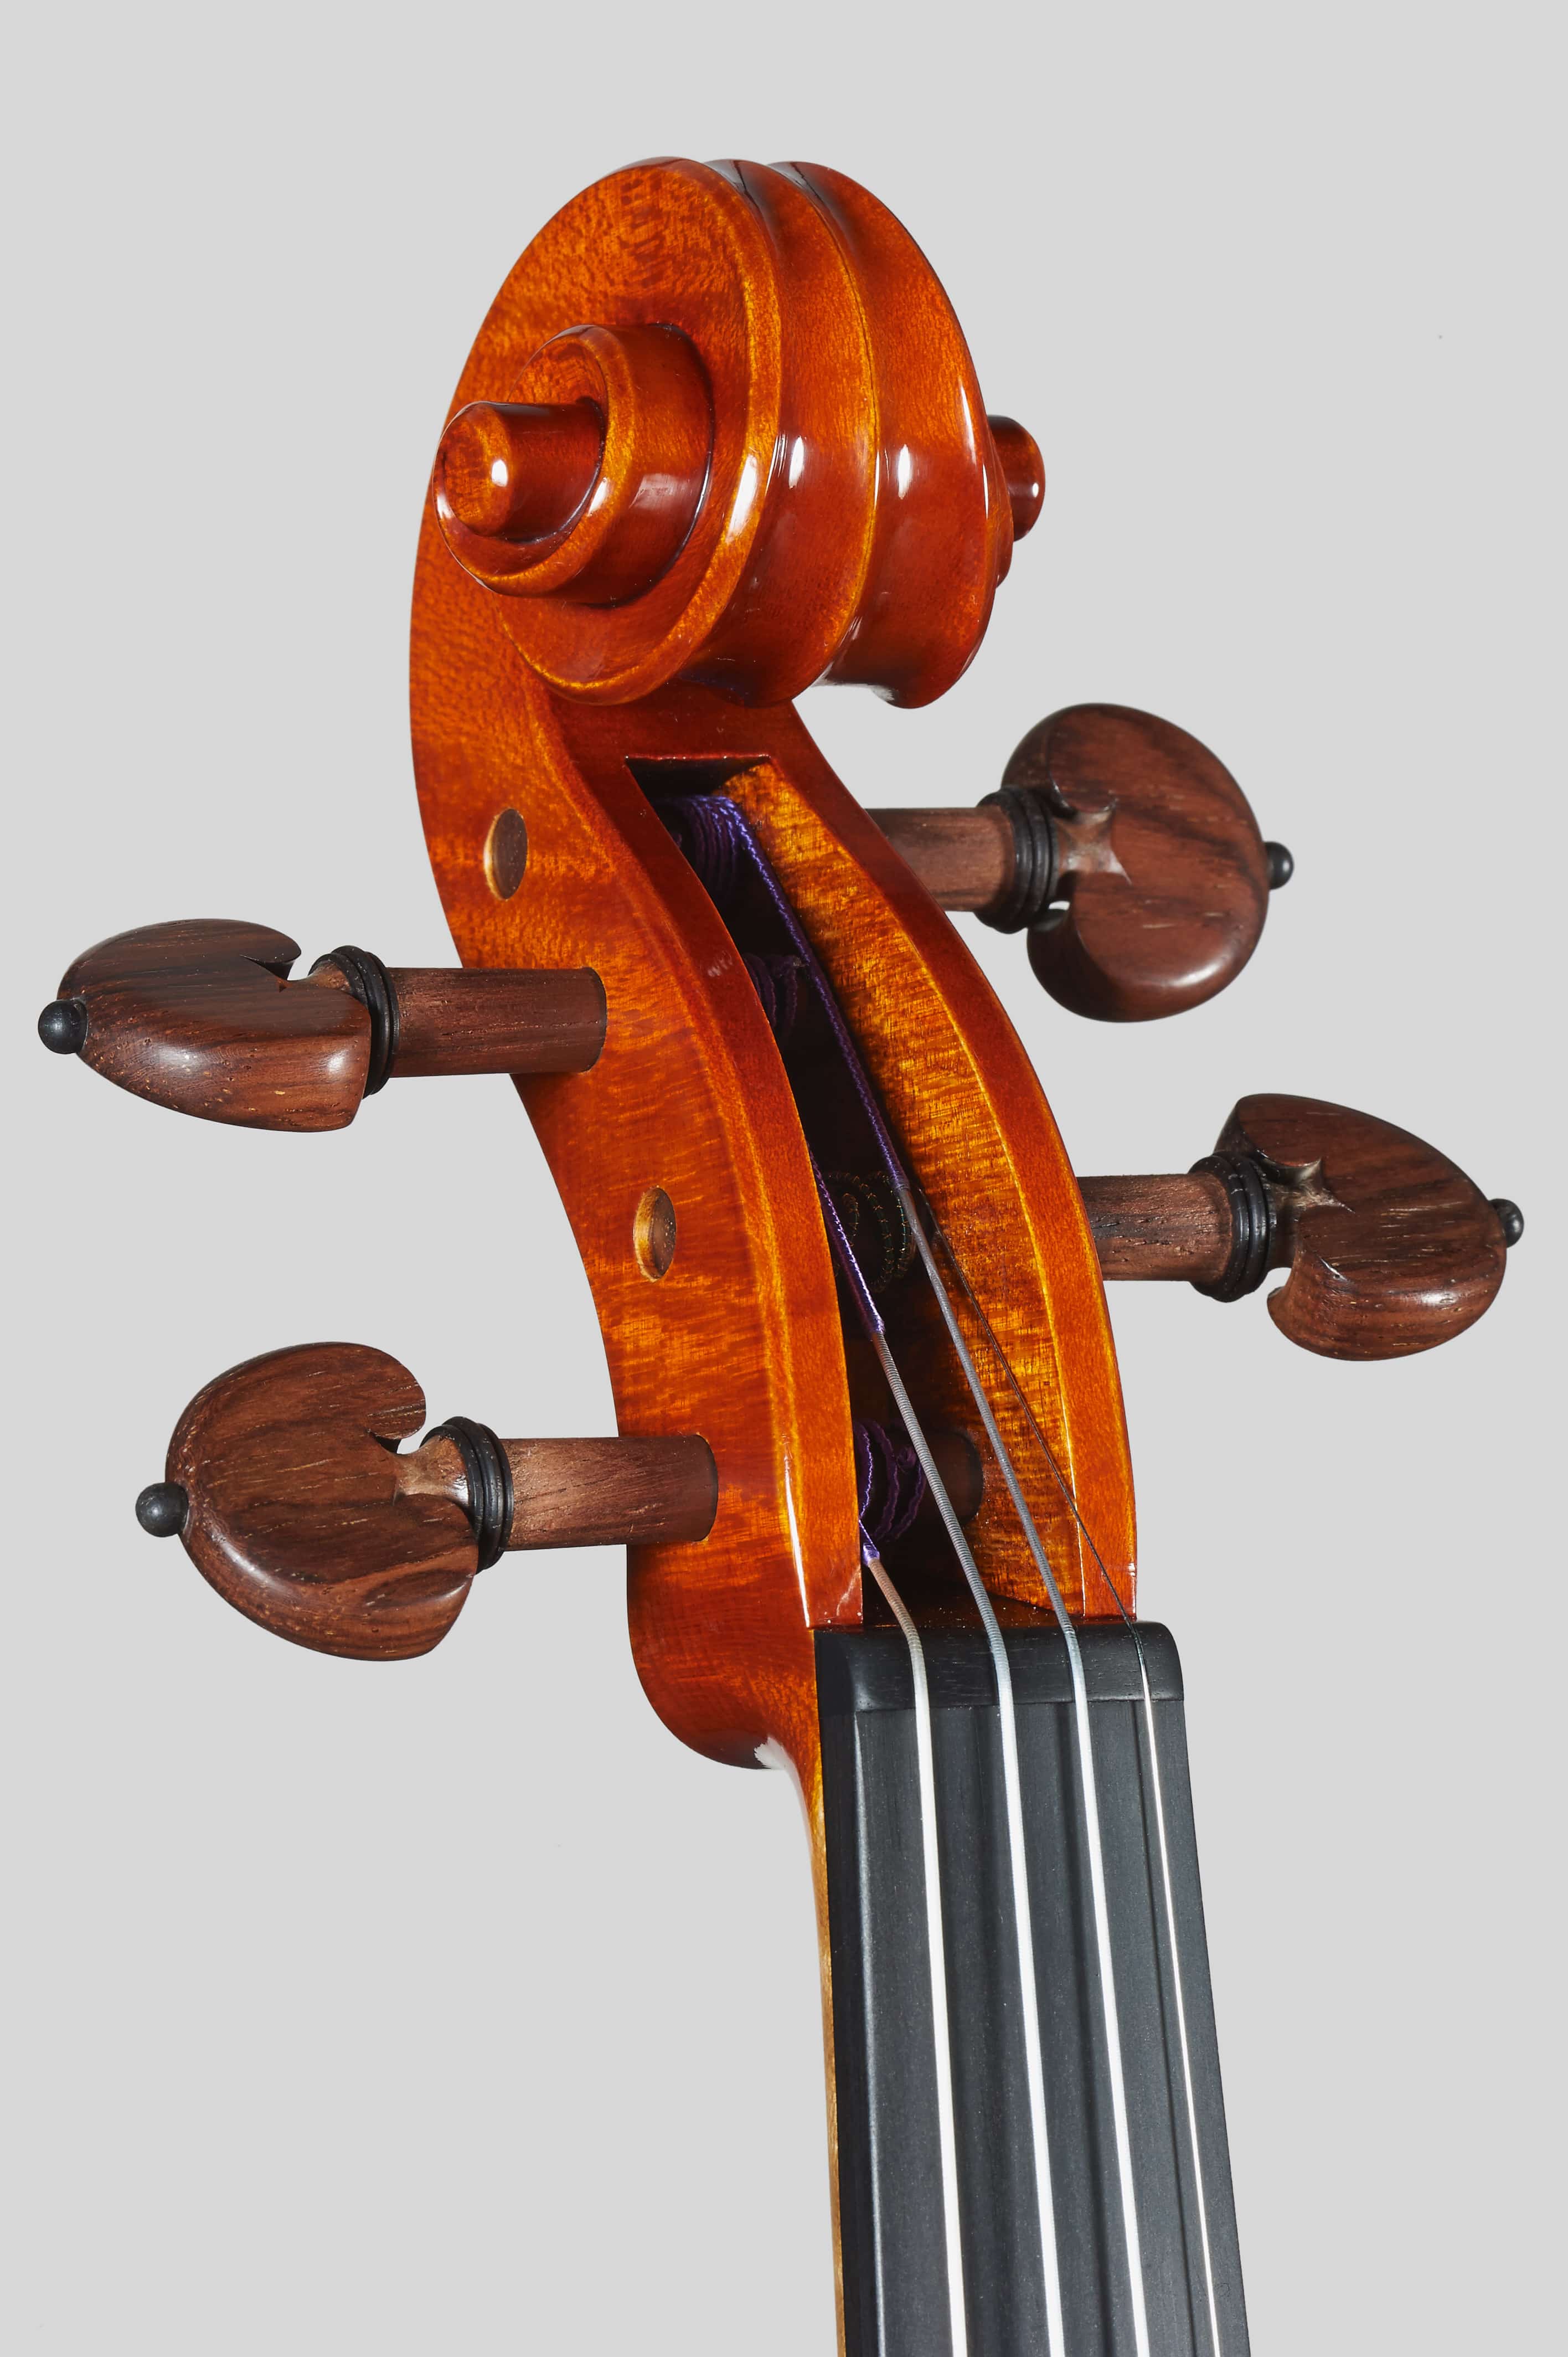 Anno 2014 – Violino modello stile A. Stradivari “Soil” 1714 - Testa